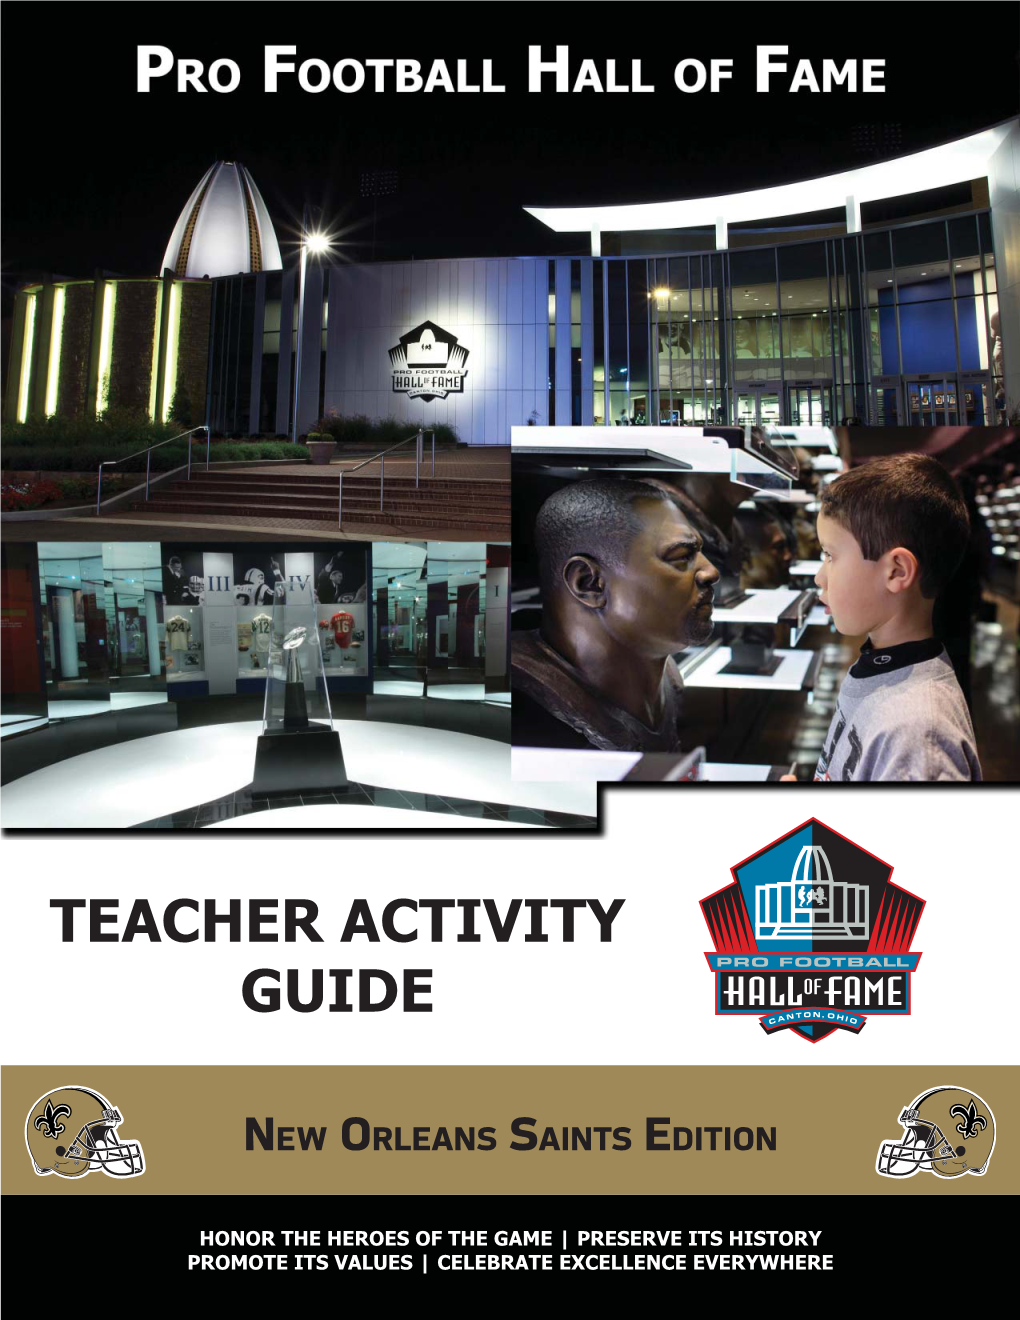 Teacher Activity Guide